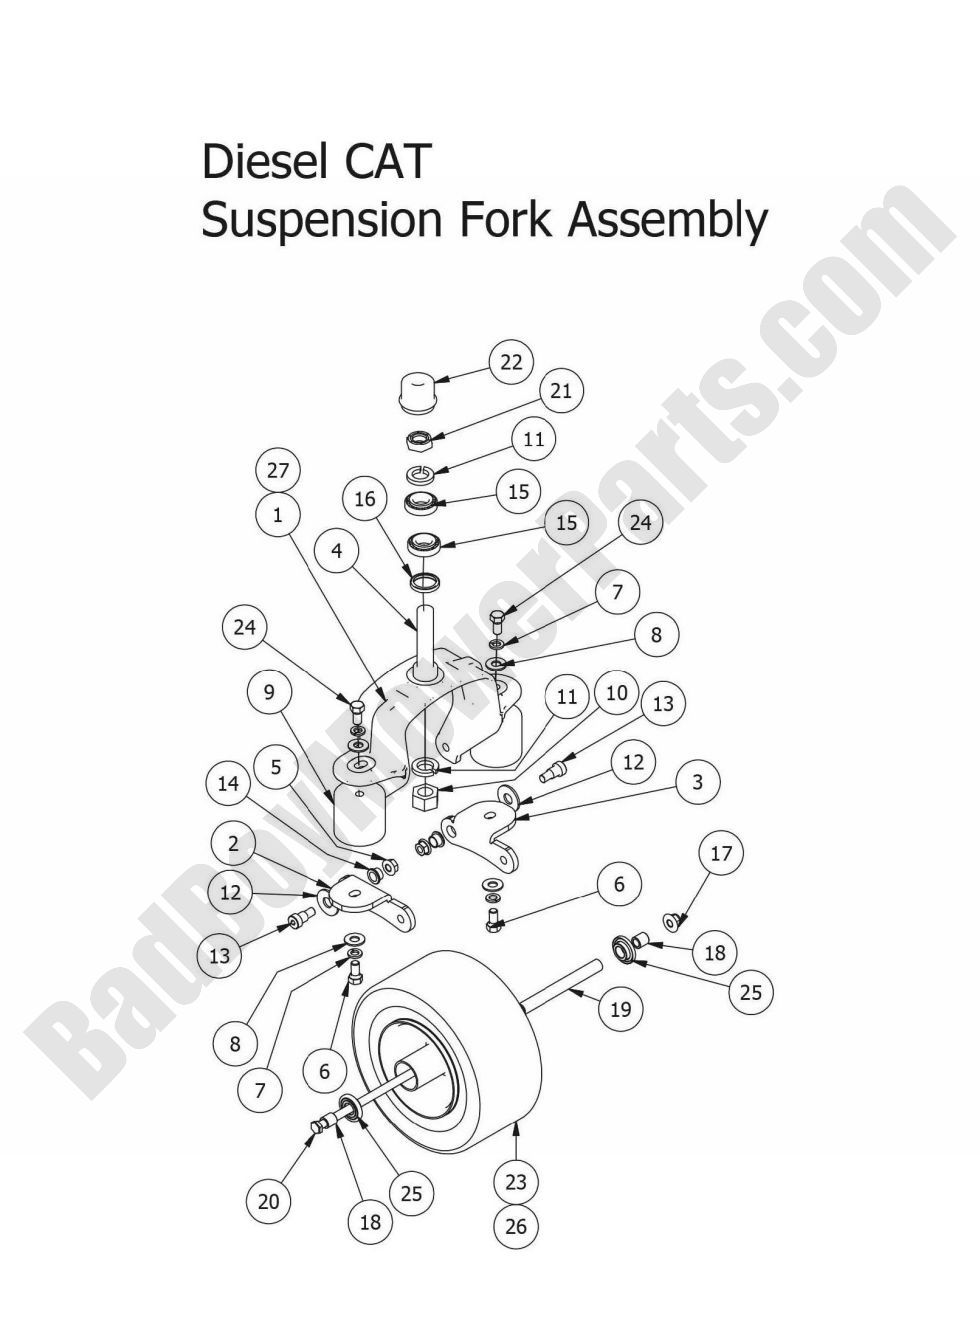 2015 Diesels Suspension Fork Assembly